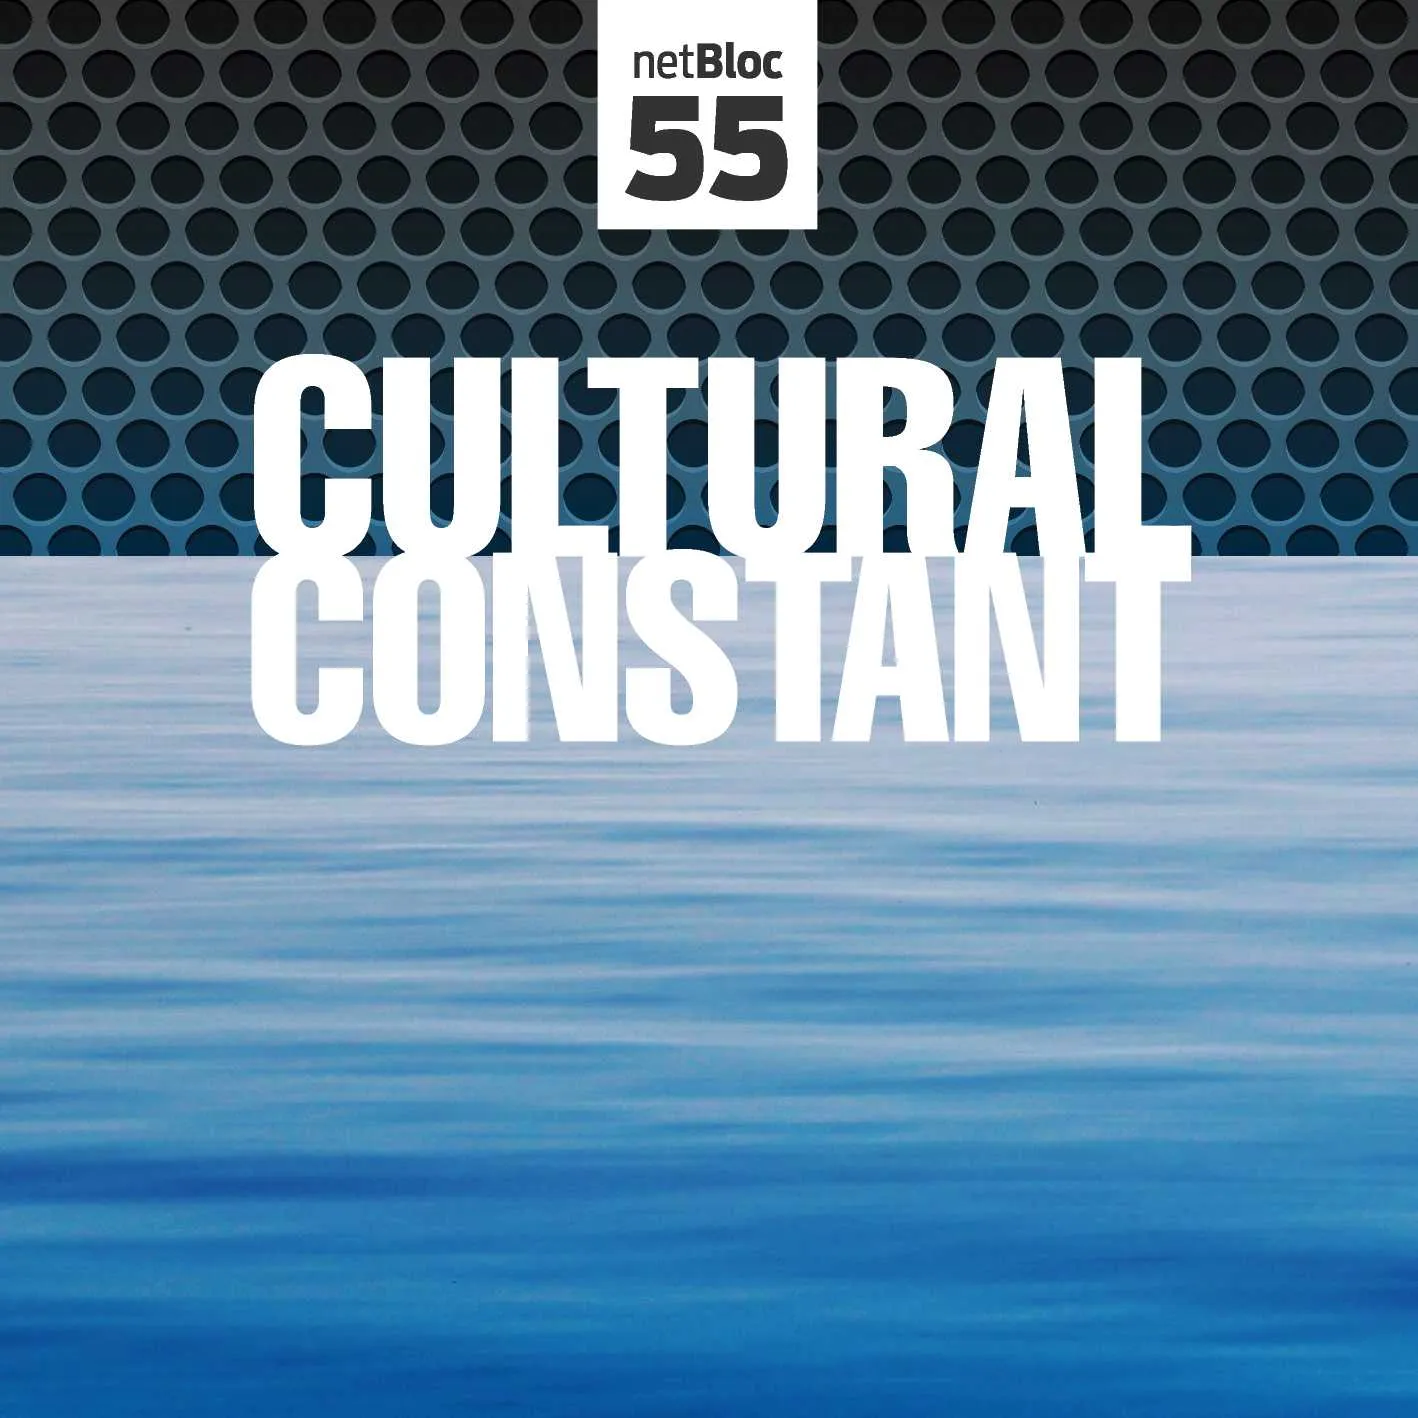 Cover of “netBloc Vol. 55: Cultural Constant”